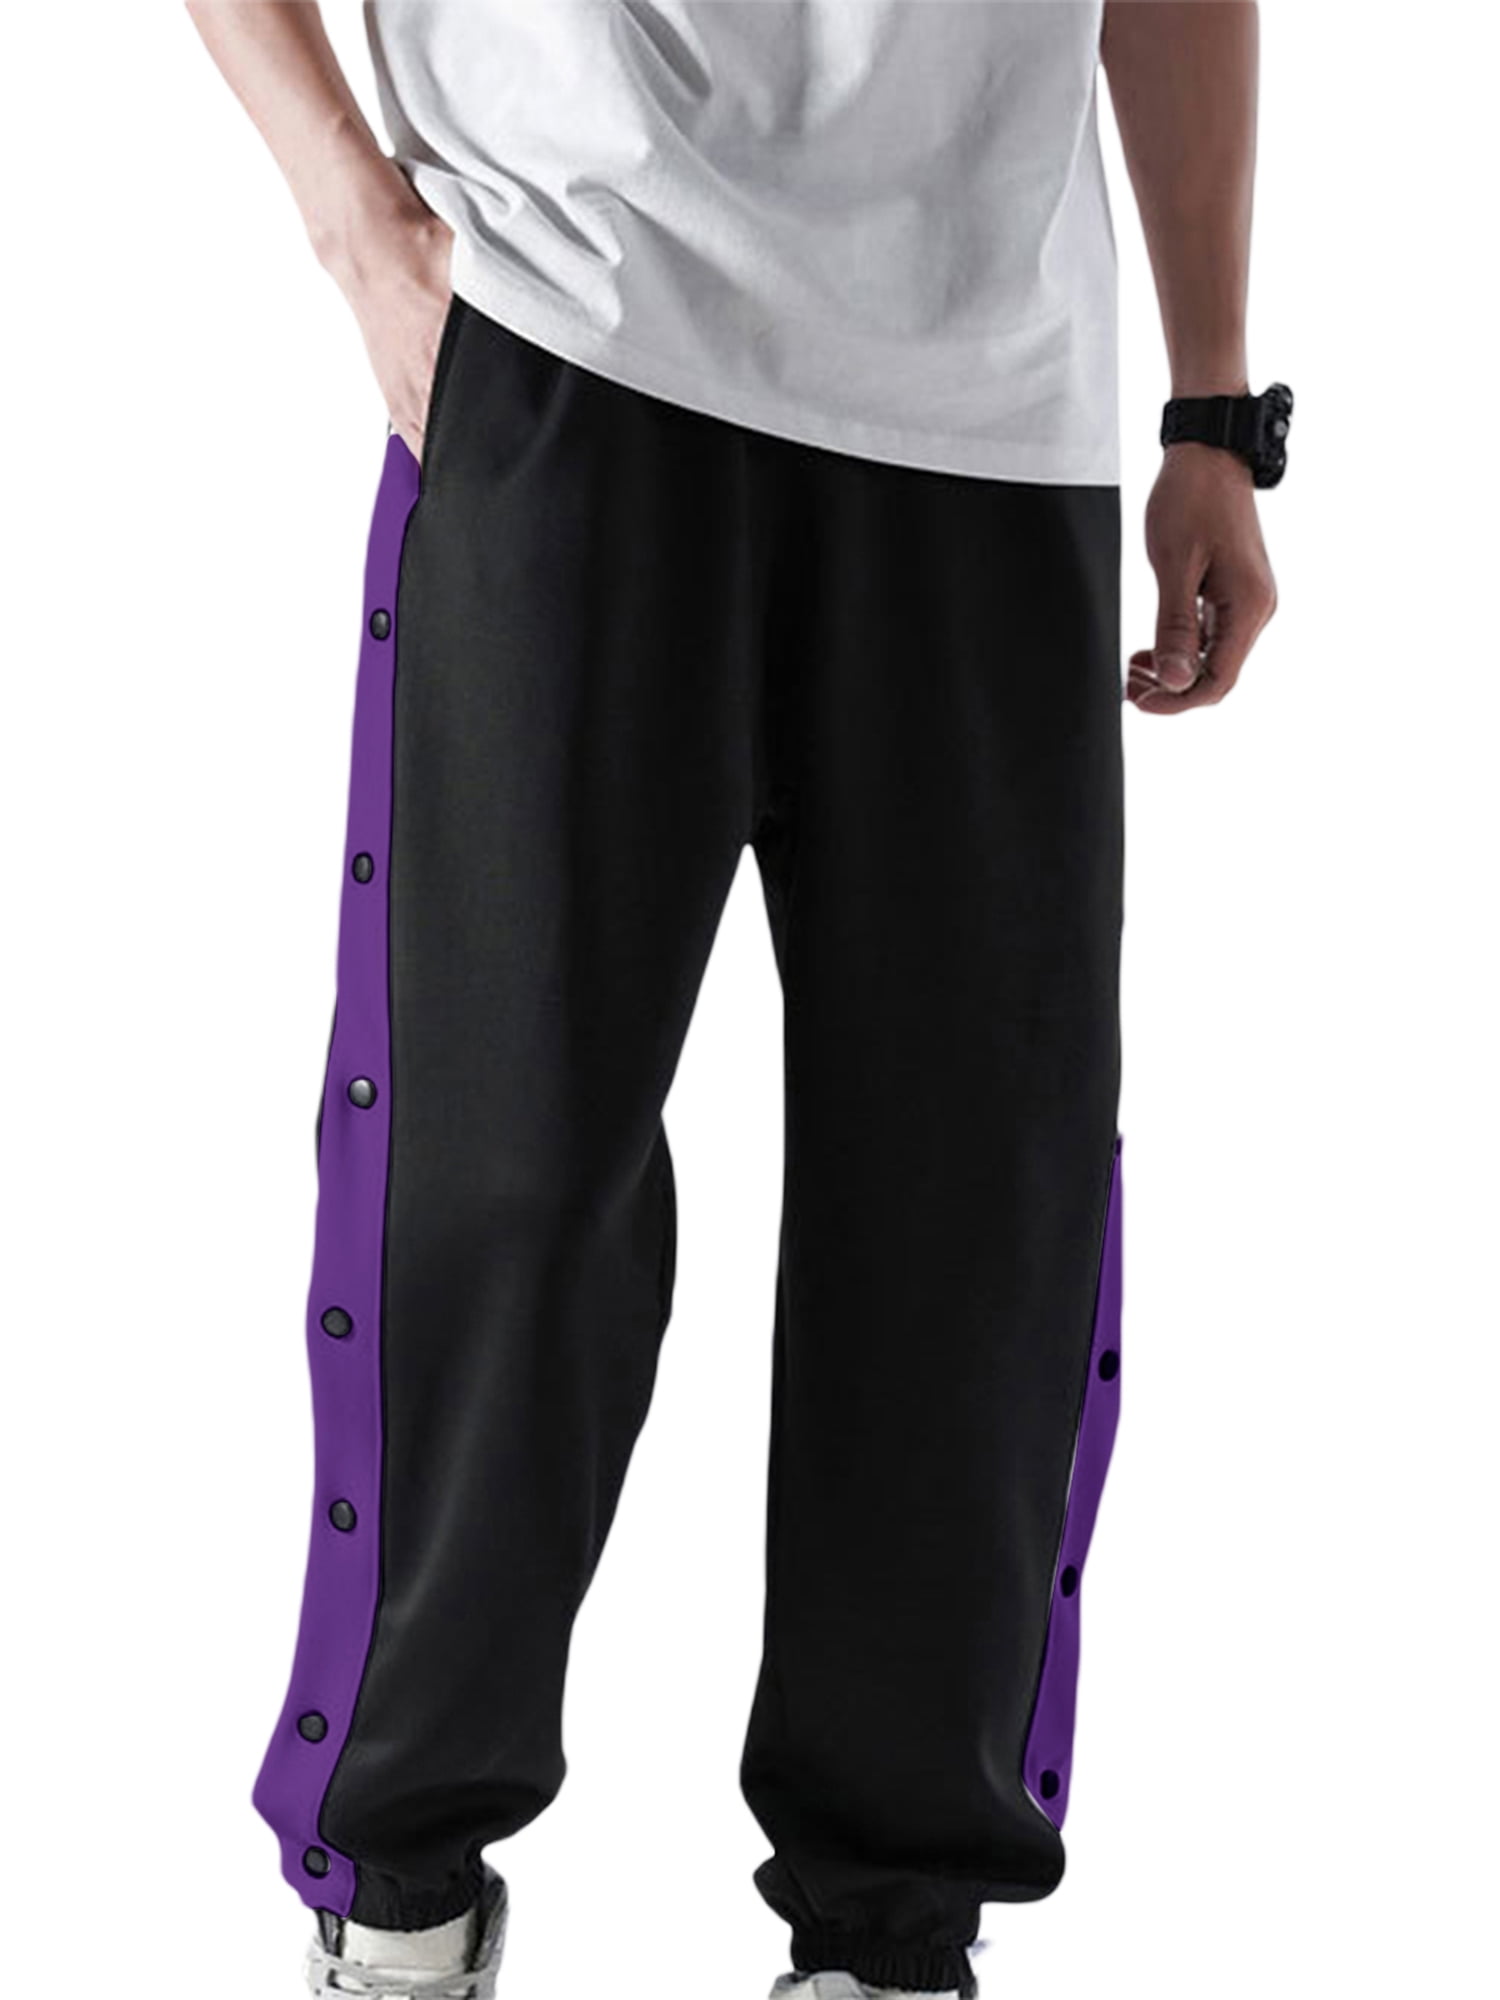 NBA Sweatpants, NBA Fleece Pants, Sweat Pants, Warm-Up Pants | store.nba.com